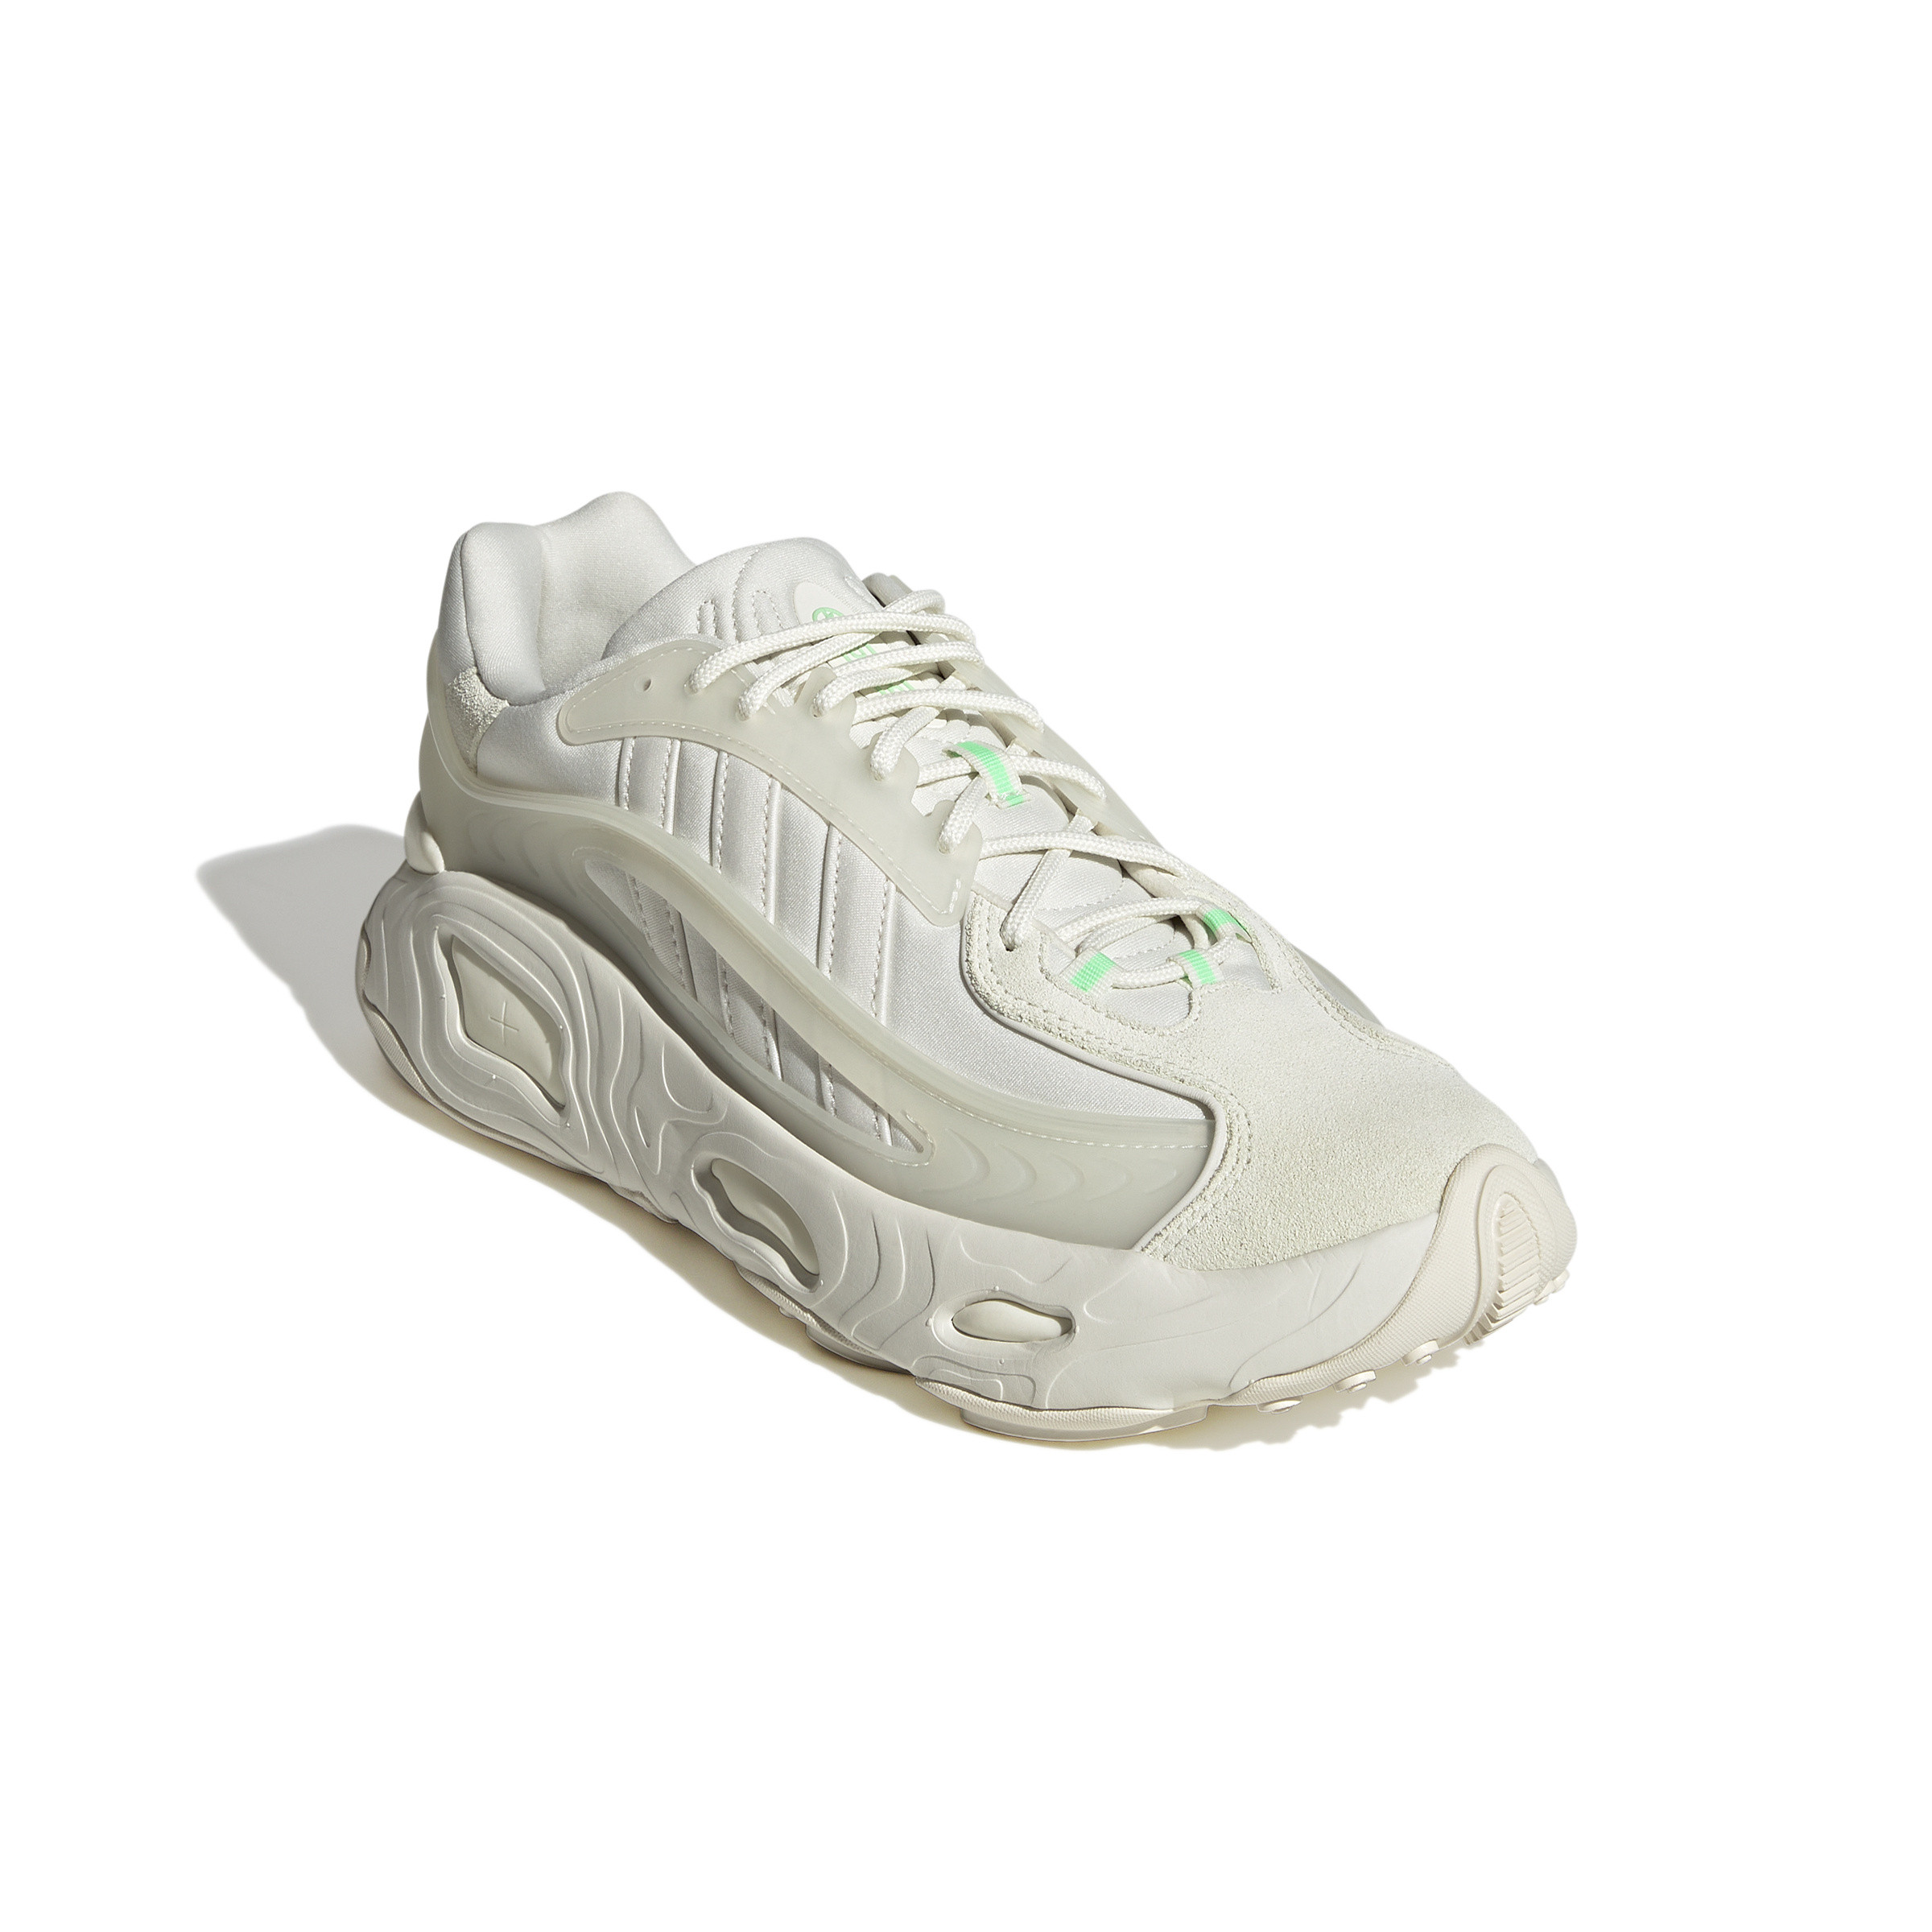 Adidas - Oznova Shoes, White, large image number 4